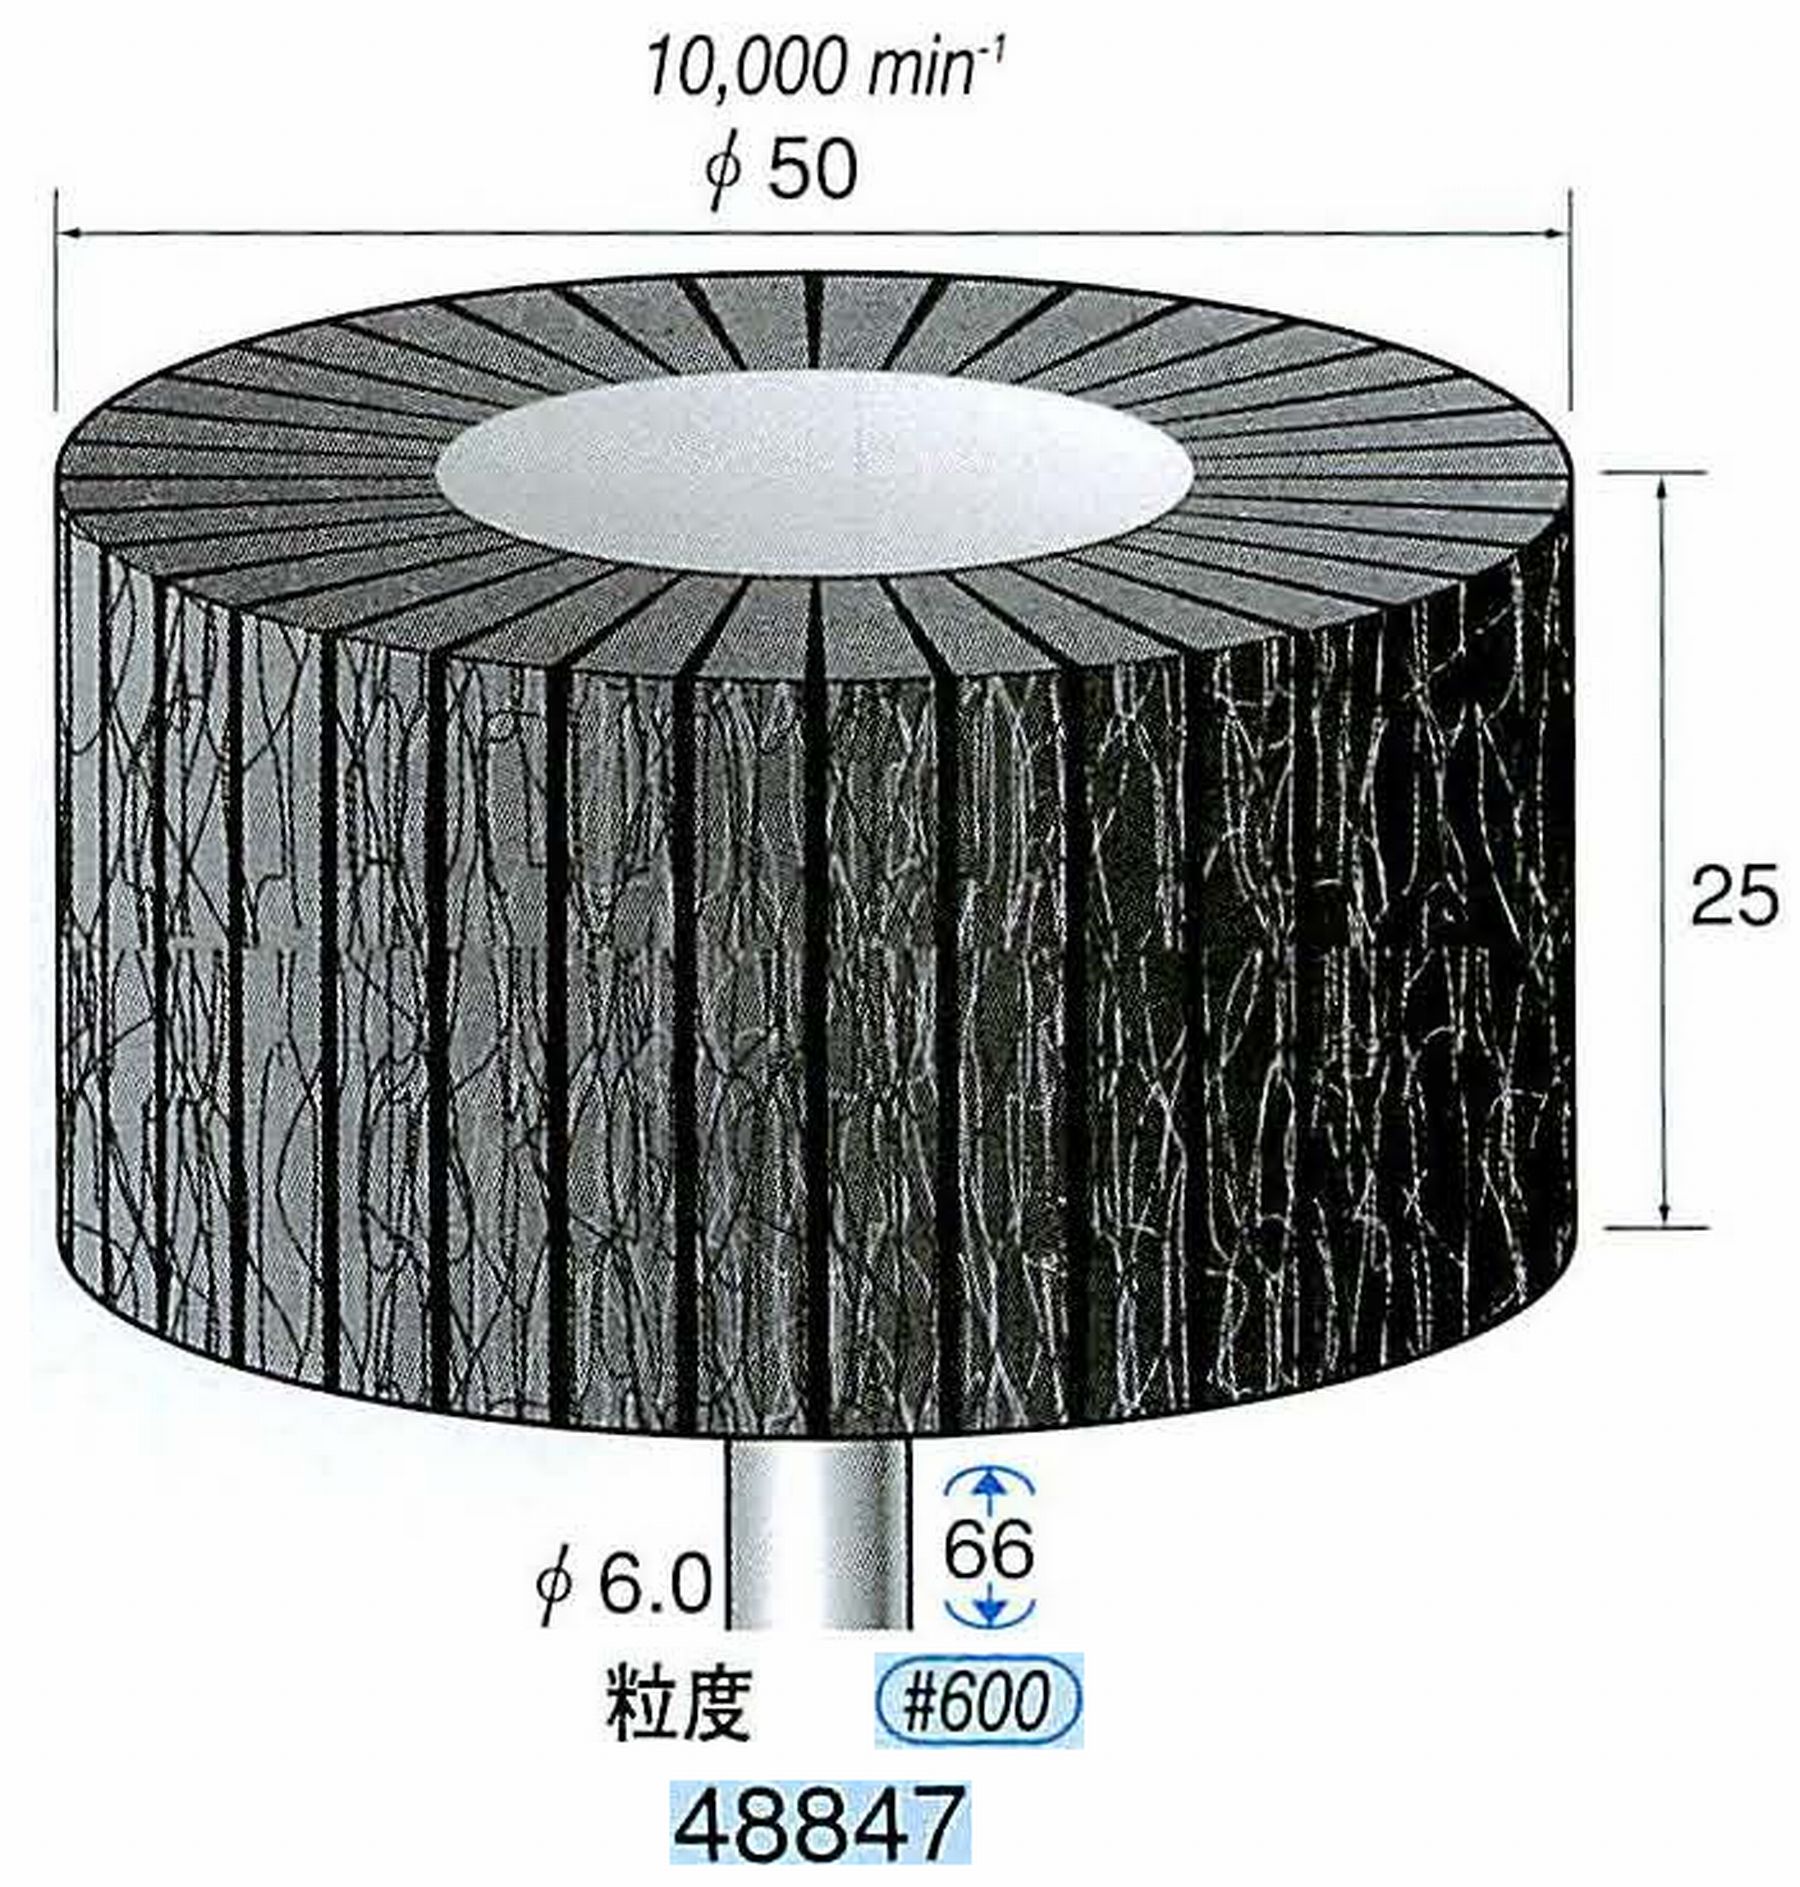 ナカニシ/NAKANISHI スポンジサンダー(研磨砥粒入り) 軸径(シャンク)φ6.0mm 48847